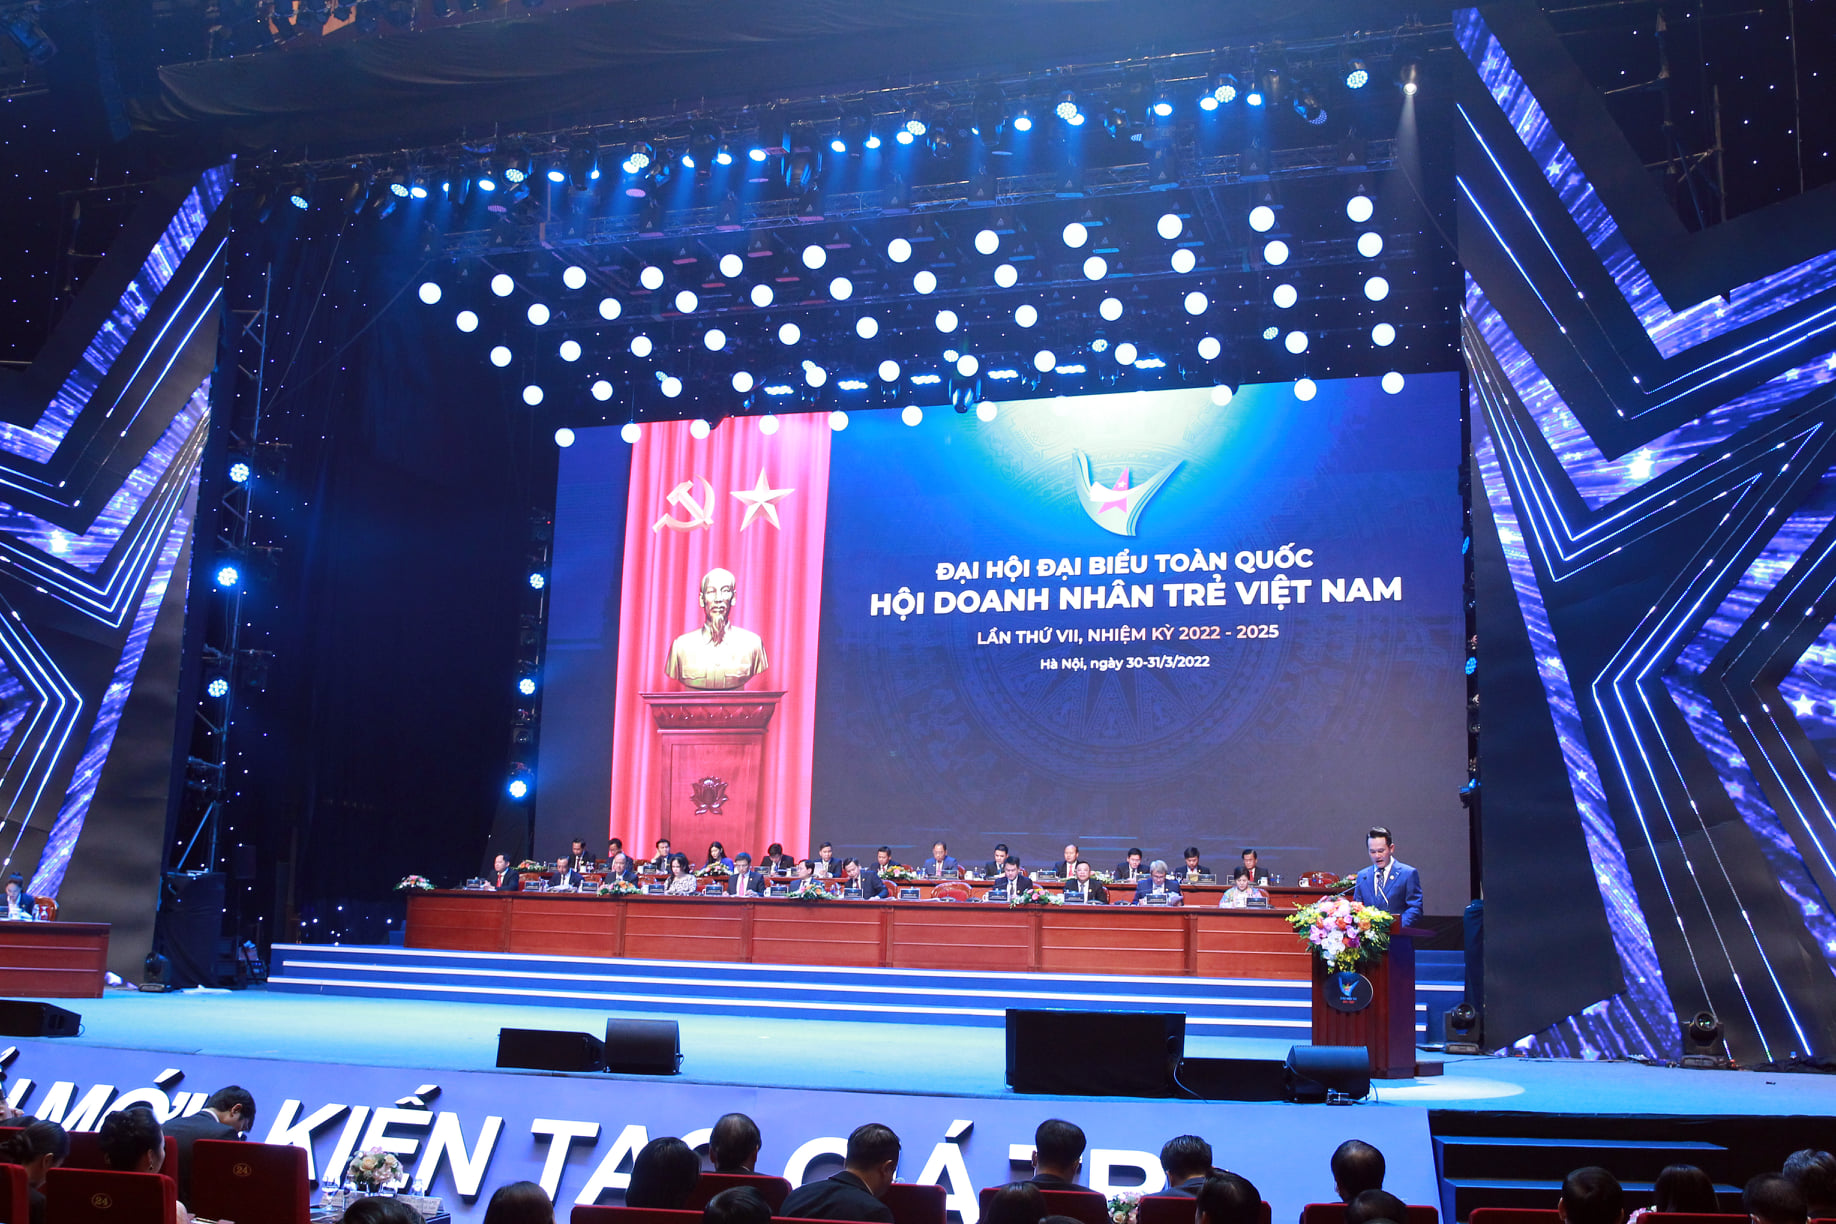 Qua 29 năm hình thành và phát triển Hội doanh nhân trẻ Việt Nam, đến nay, các doanh nghiệp của hội viên đang tạo việc làm cho 3 triệu người lao động với tổng doanh thu hàng năm đạt trên 30 tỷ USD.